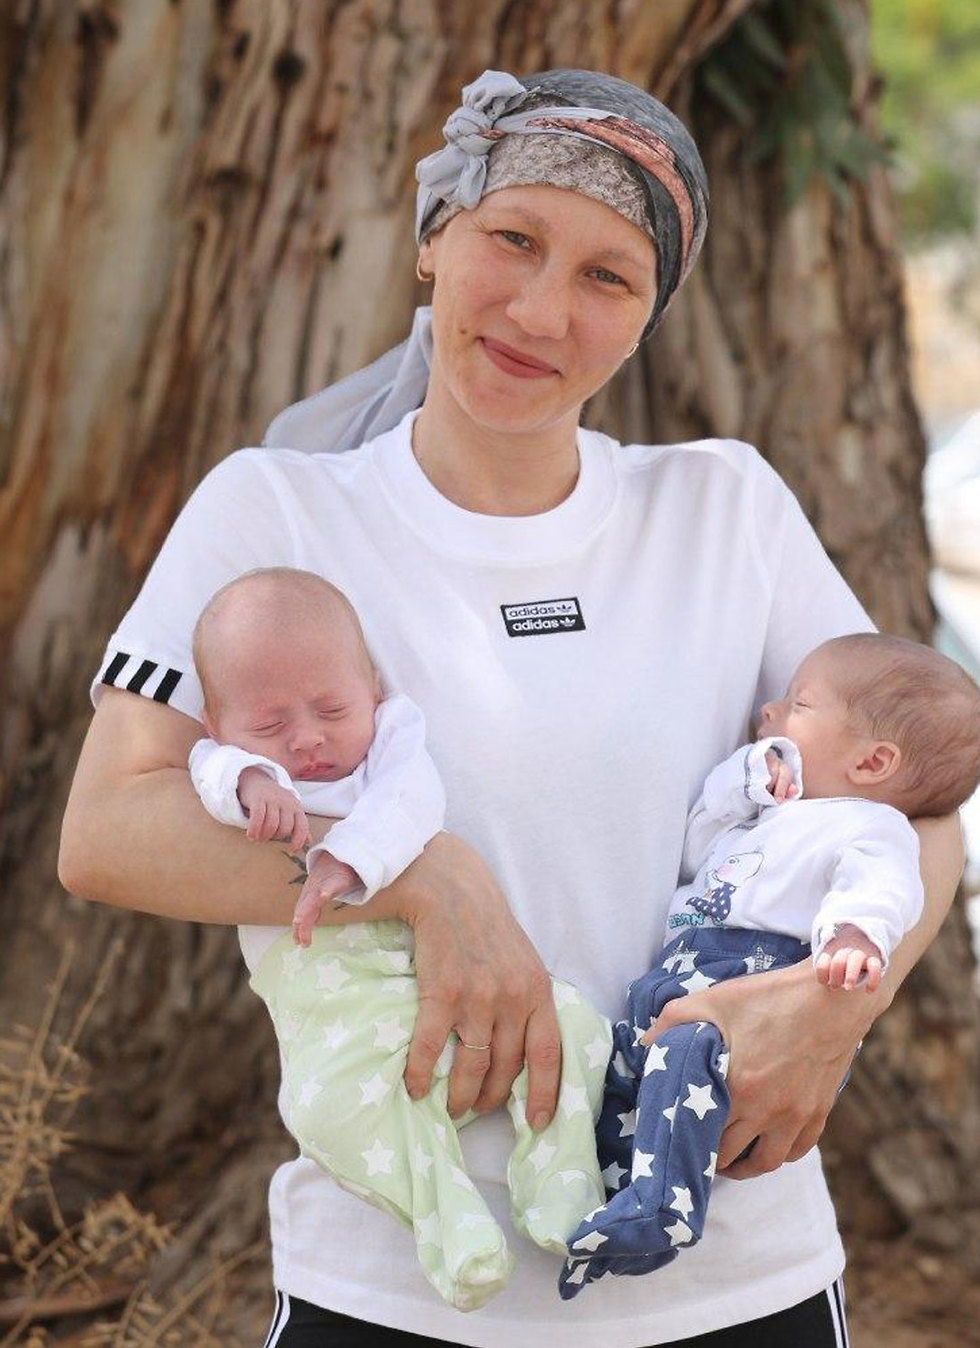 הדילמה הגורלית של אירנה: הגיעה לבית חולים וגילתה שהיא גם בהריון עם תאומים וגם חולה בסרטן (צילום: גדי קבלו)